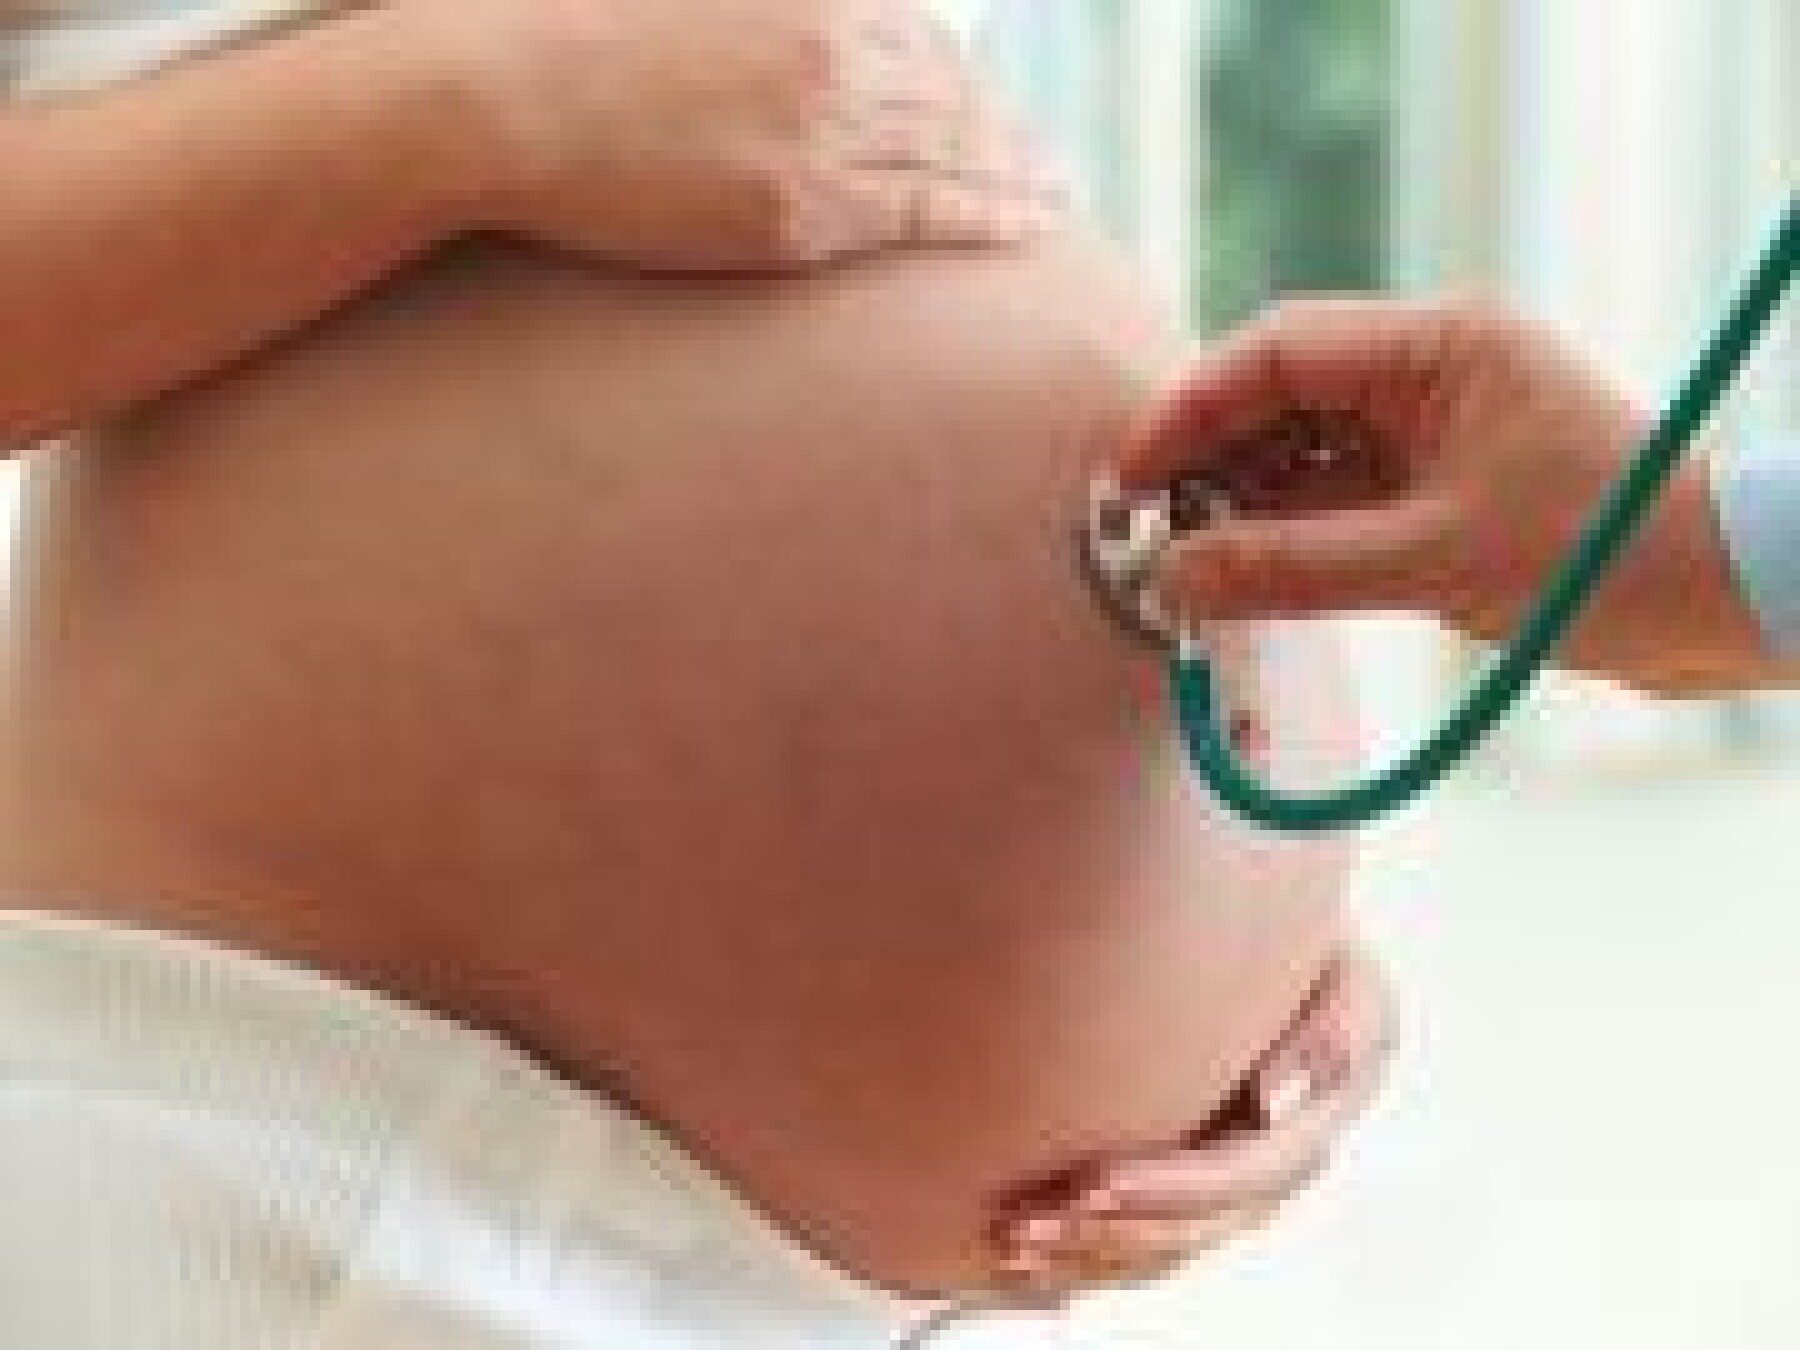 Arrivée à la maternité : qu'est-ce qui m'attend ?